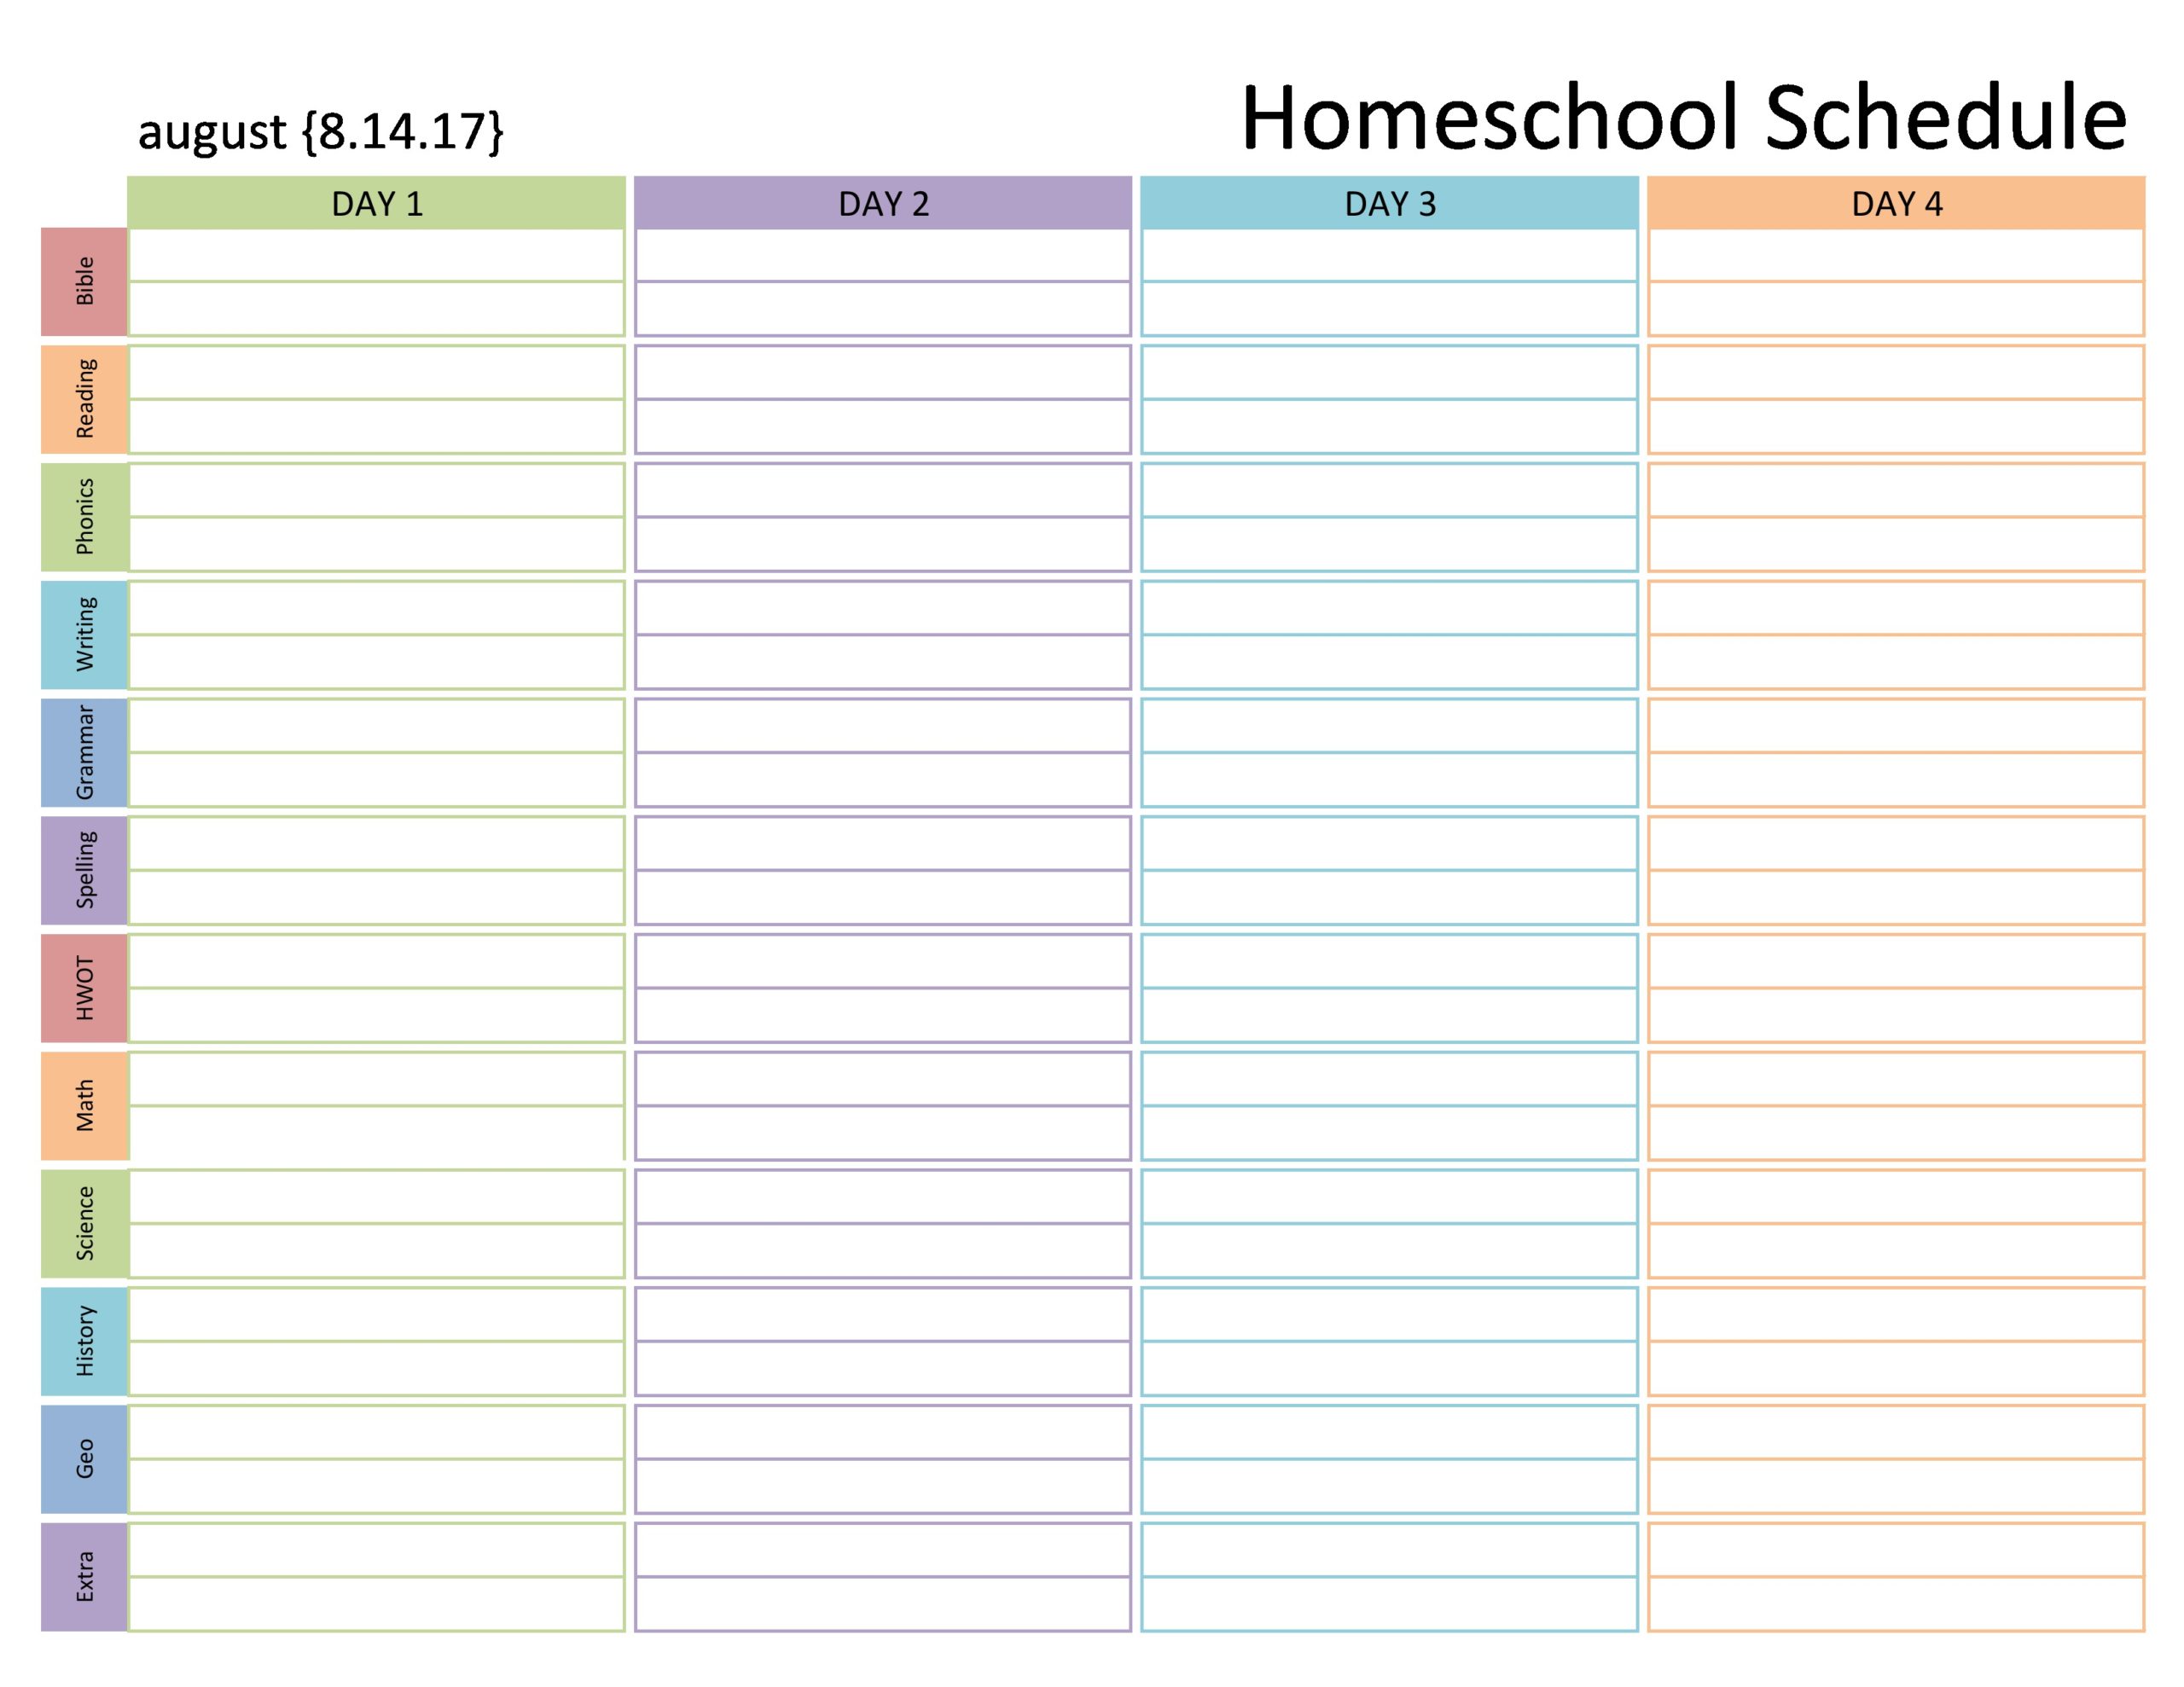 Free homeschool schedule template 27